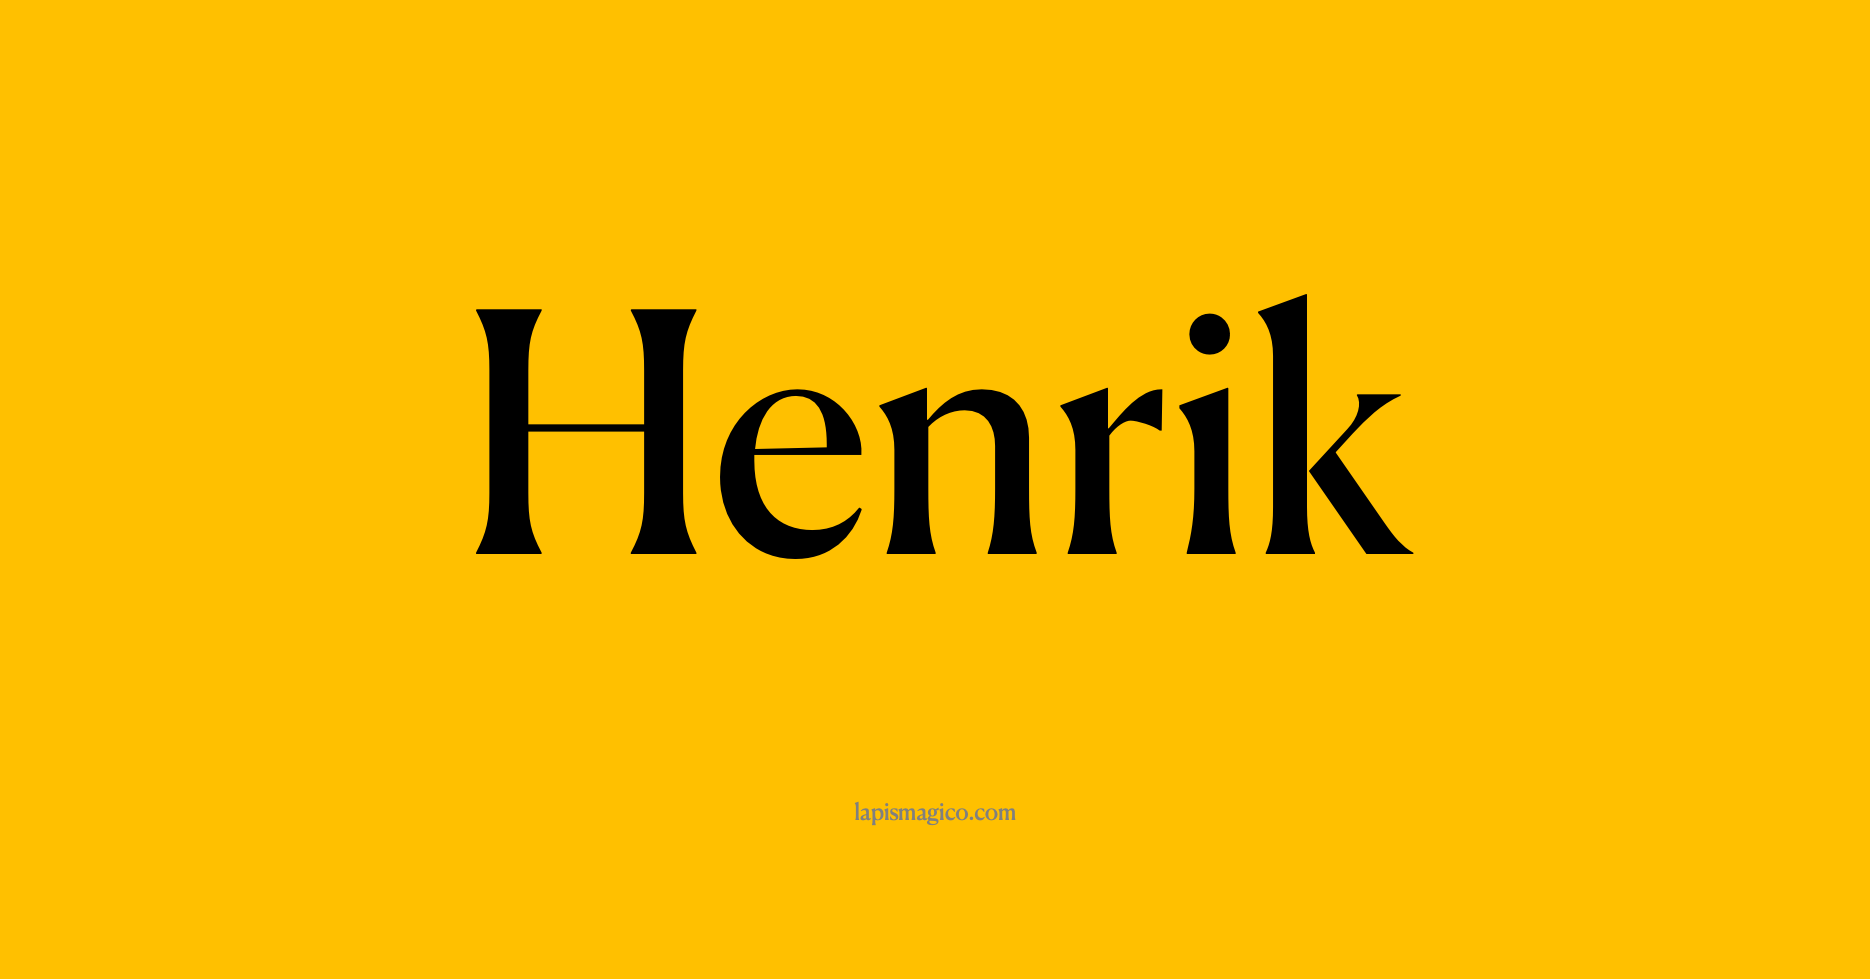 Nome Henrik